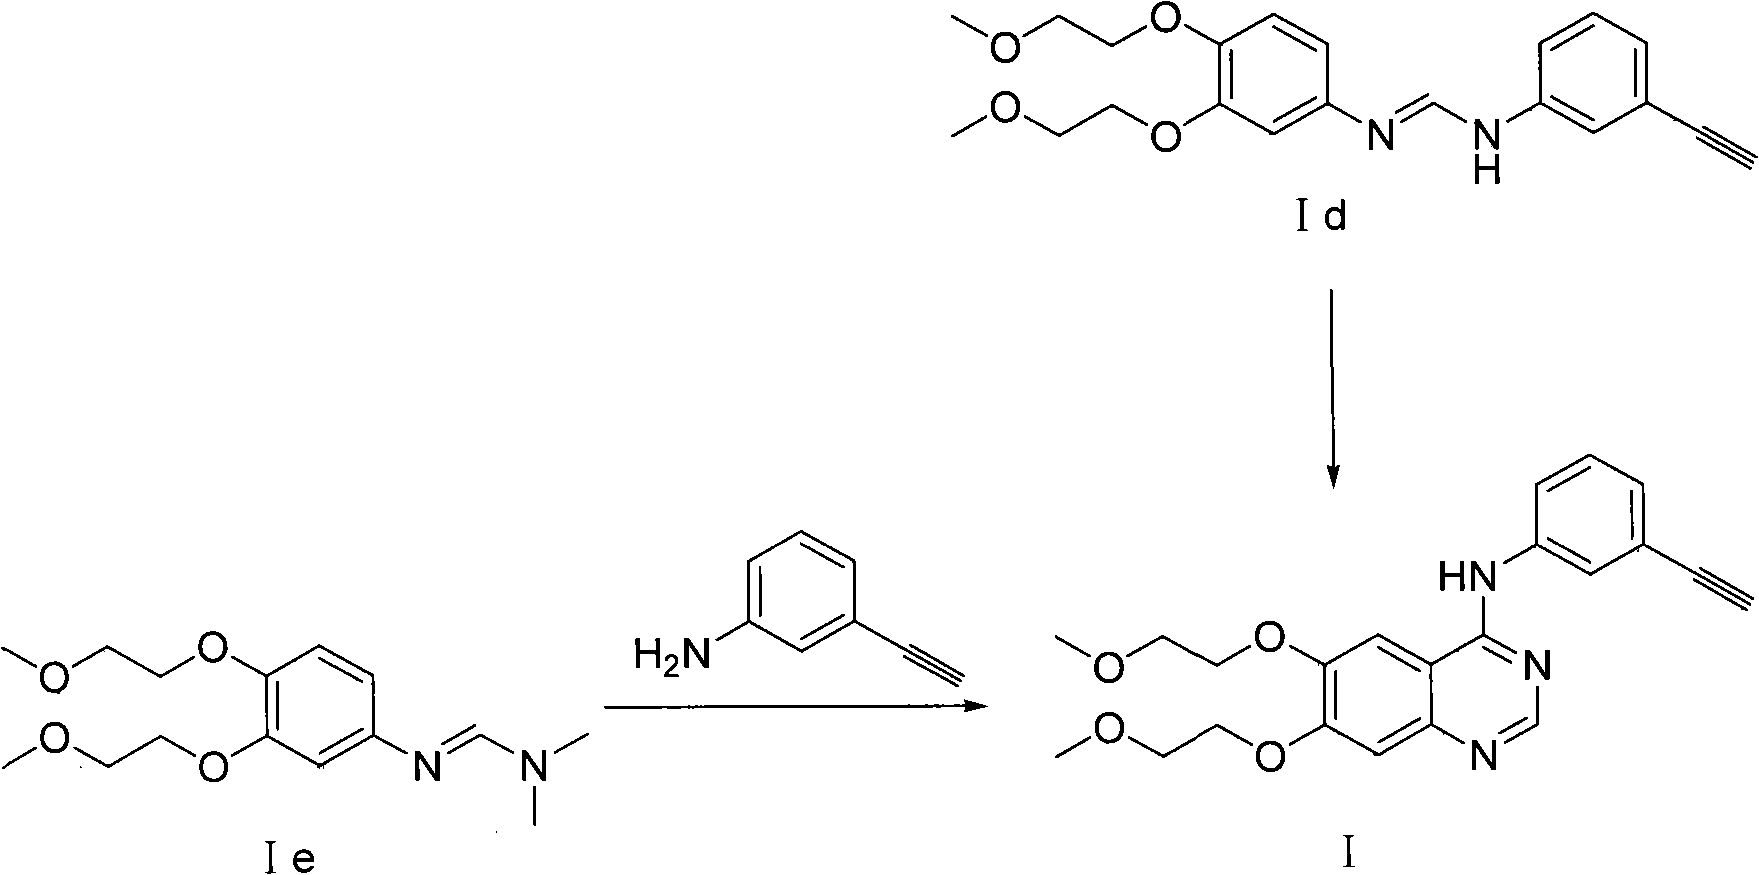 Preparation method of quinazoline derivate